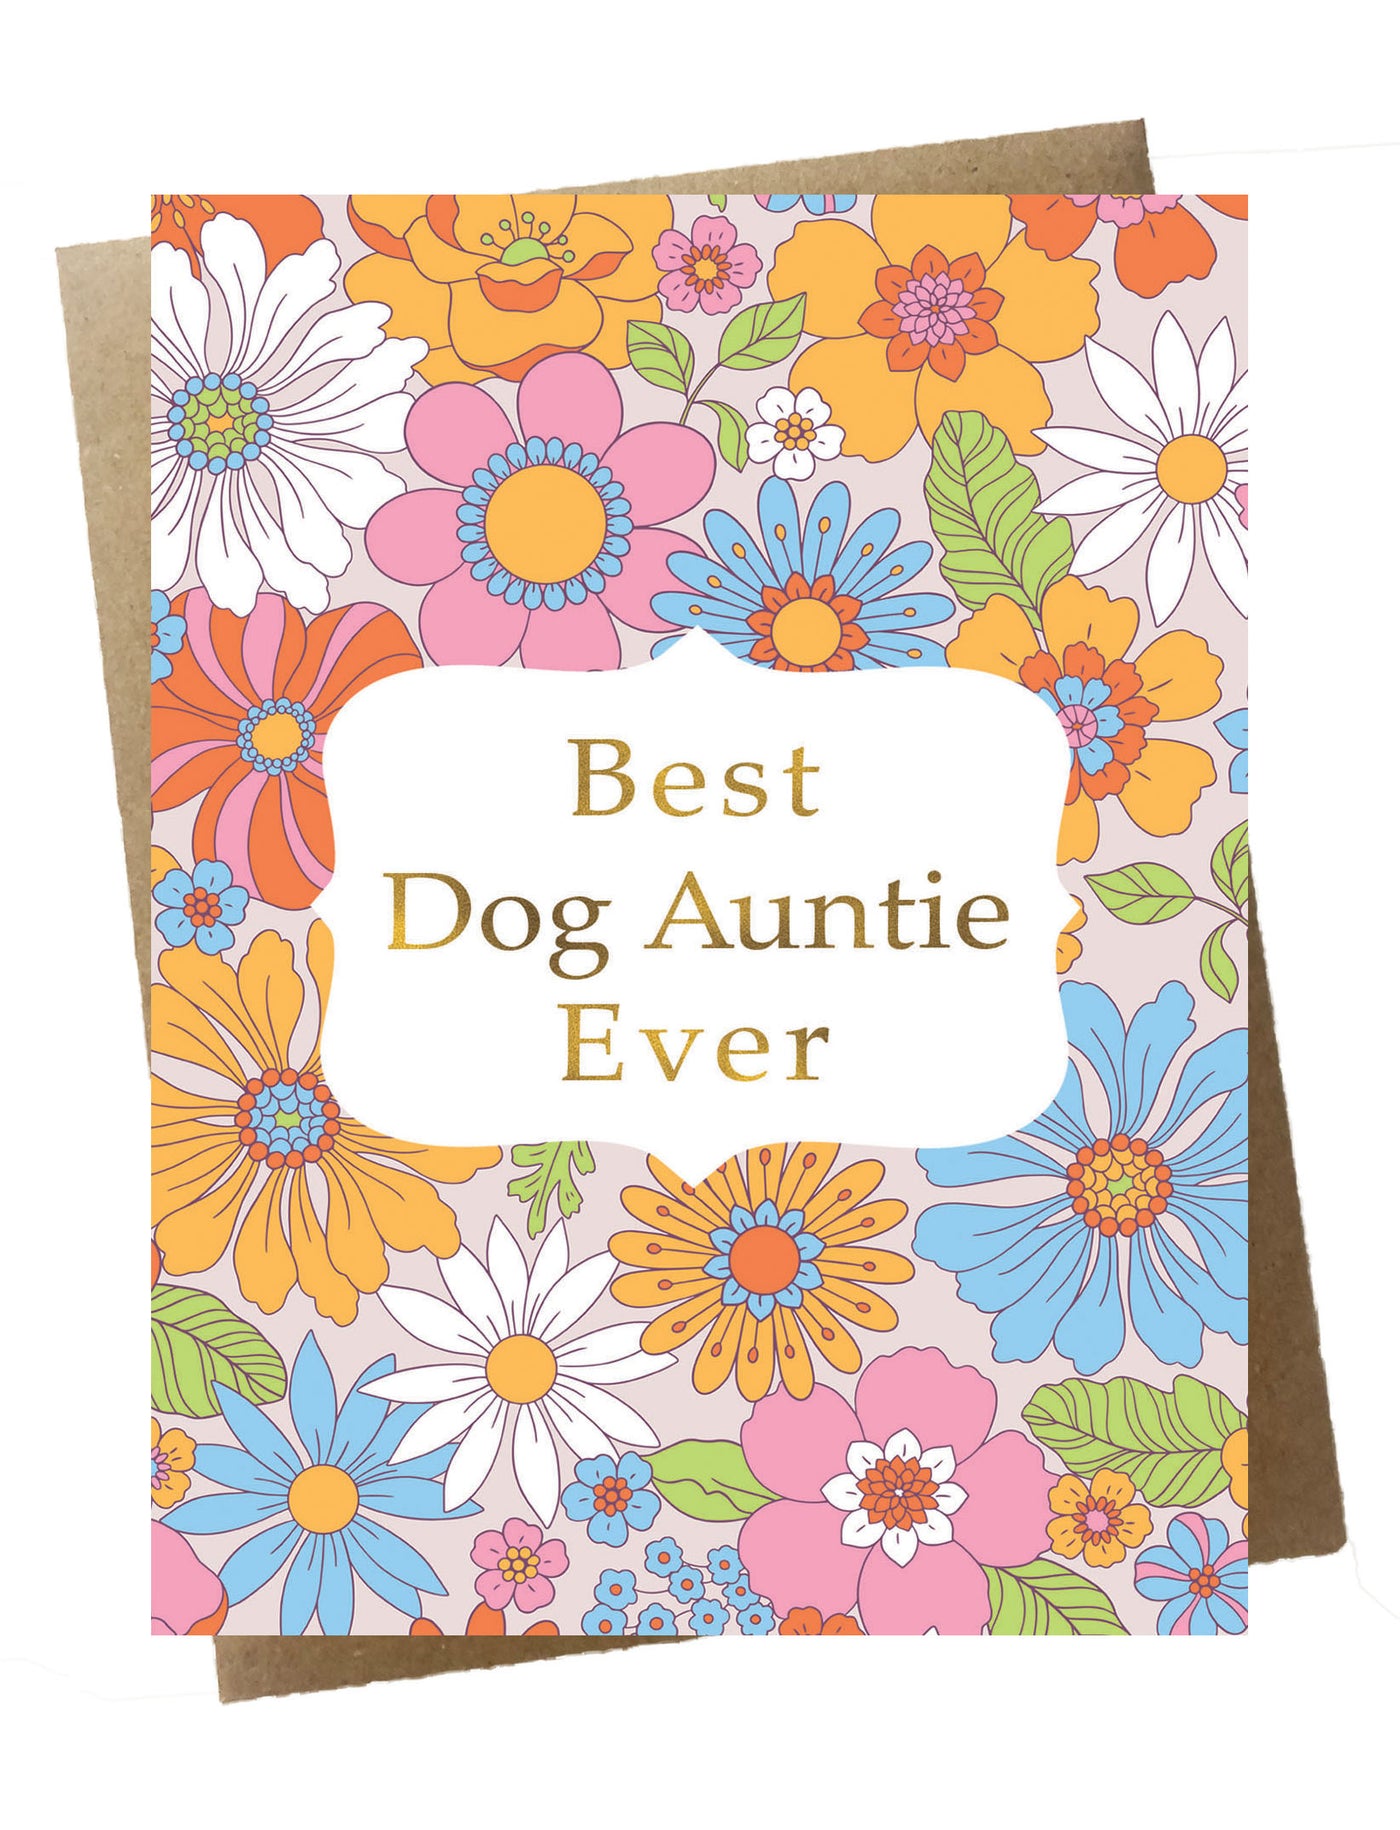 Best Dog Auntie Ever